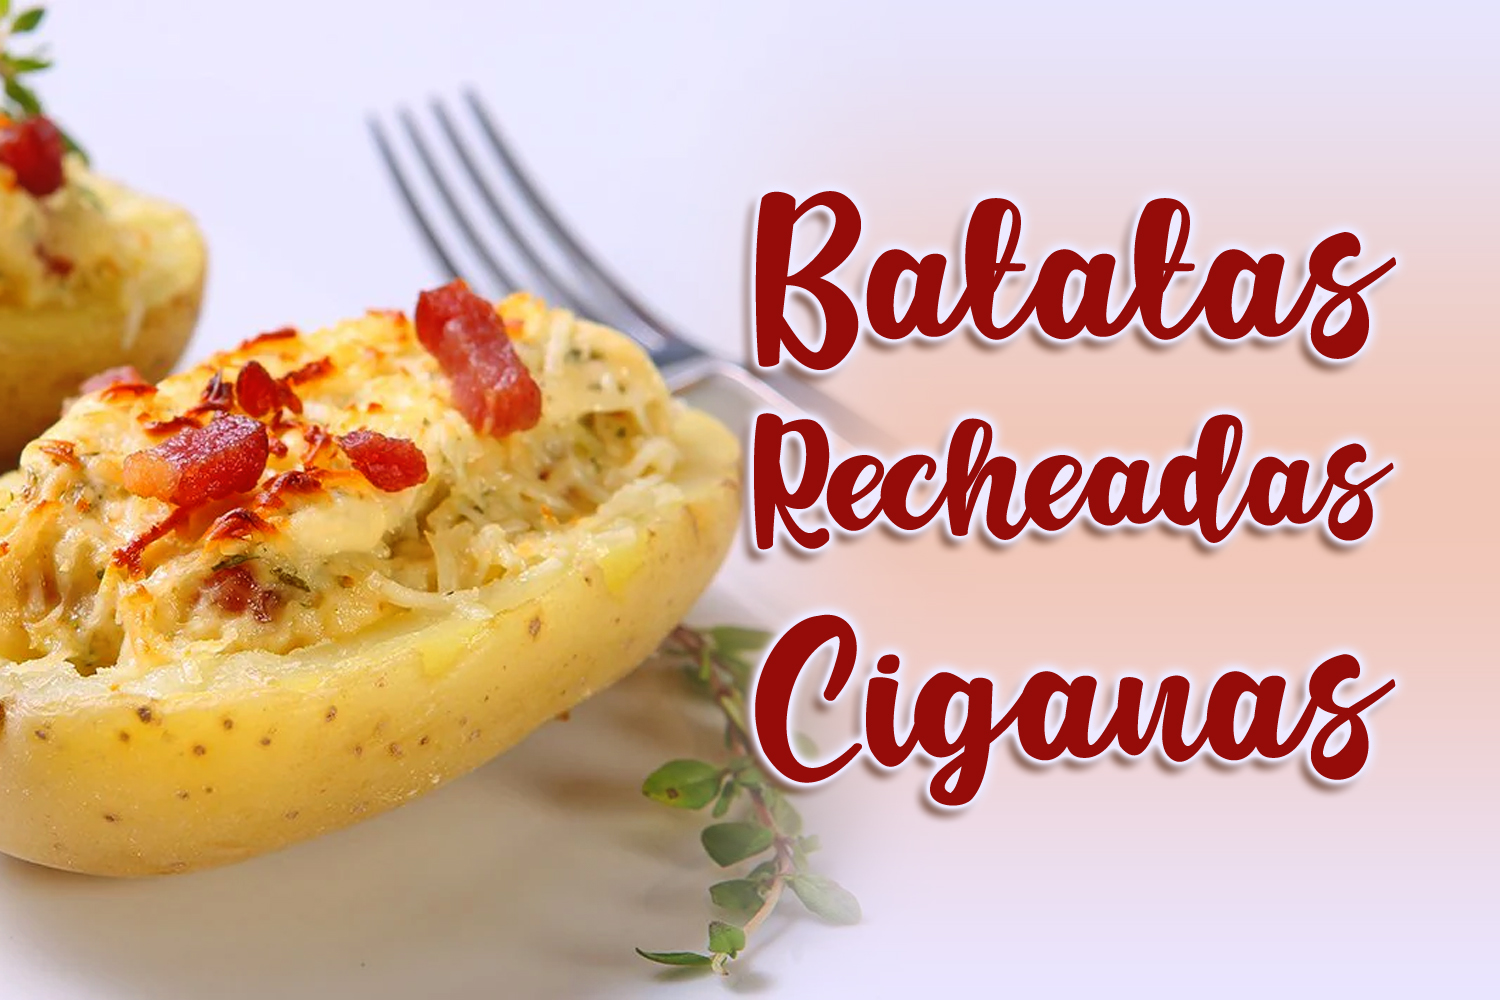 Batatas Recheadas Ciganas